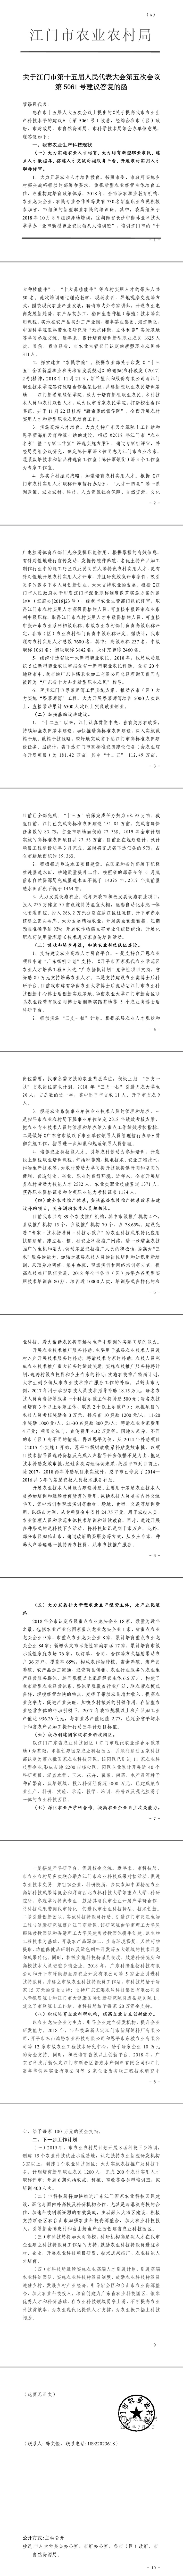 关于江门市第十五届人民代表大会第五次会议第5061号建议答复的函.jpg